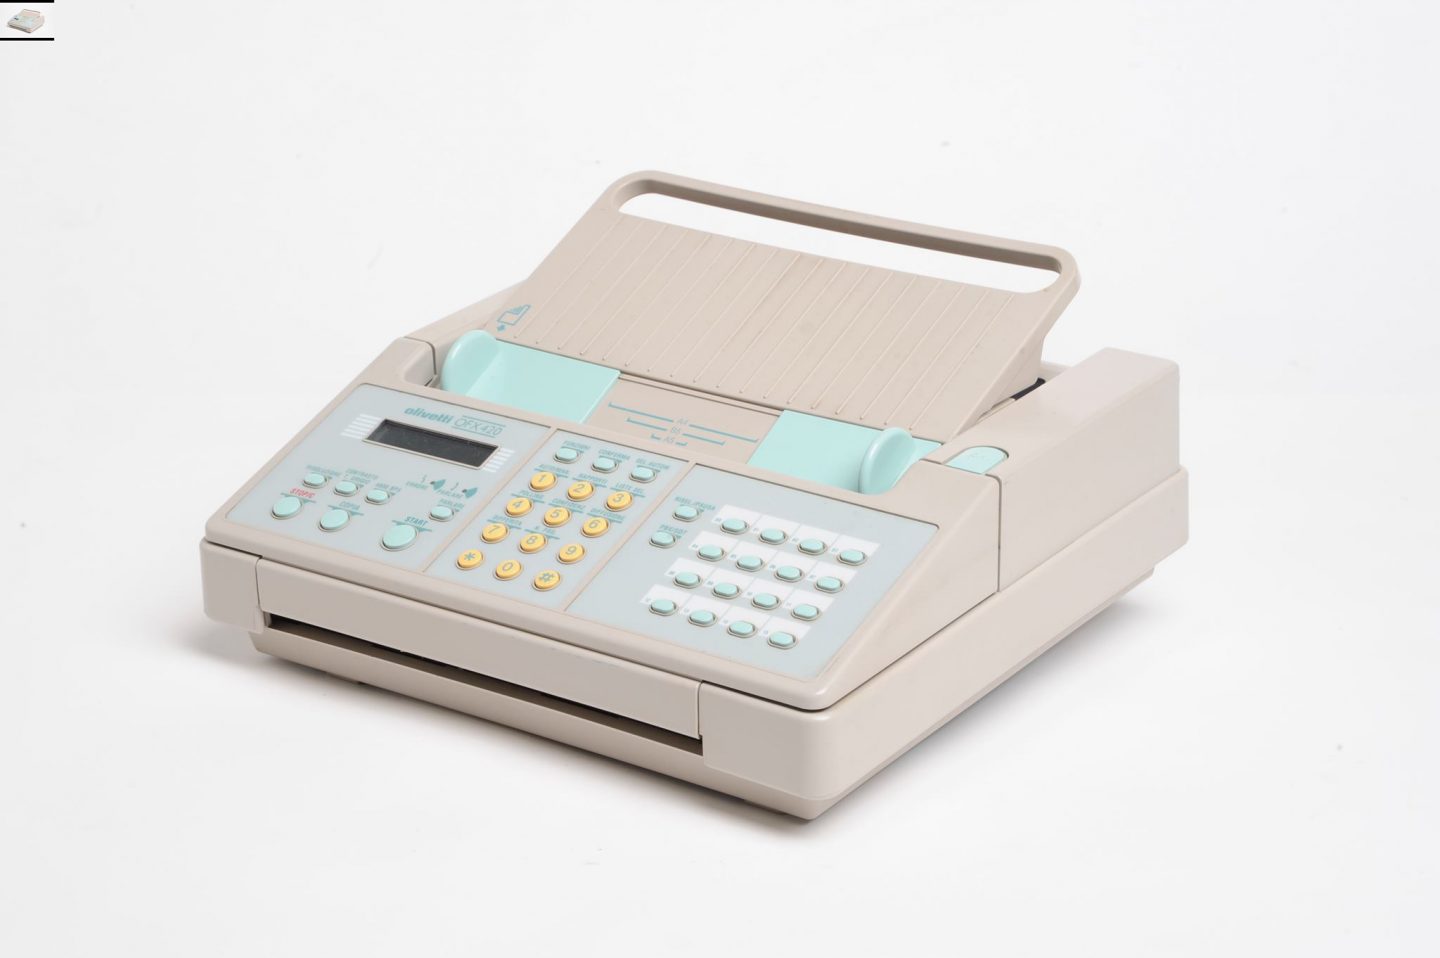 Apparecchio per fax “OFX 420”